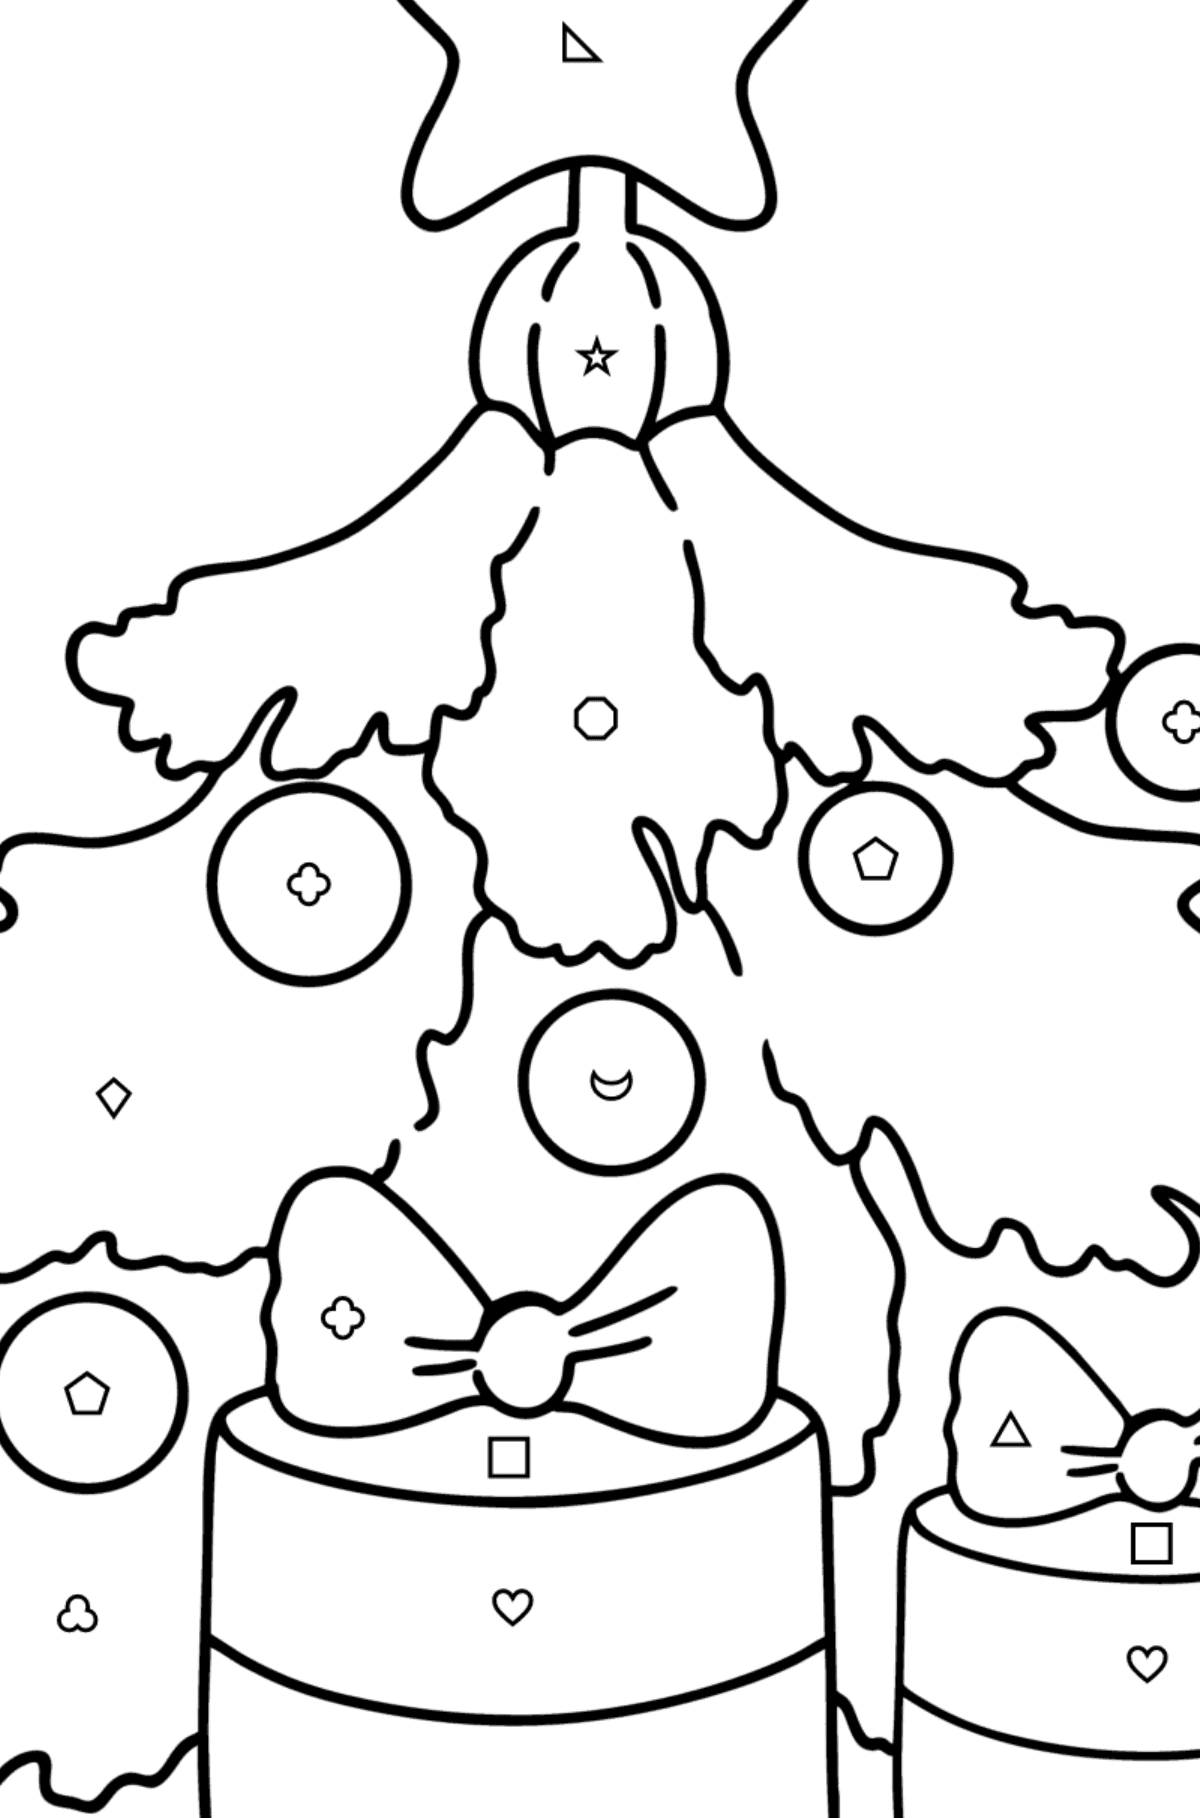 Kleurplaat Kerstboom en cadeaus - Kleuren met geometrische figuren voor kinderen